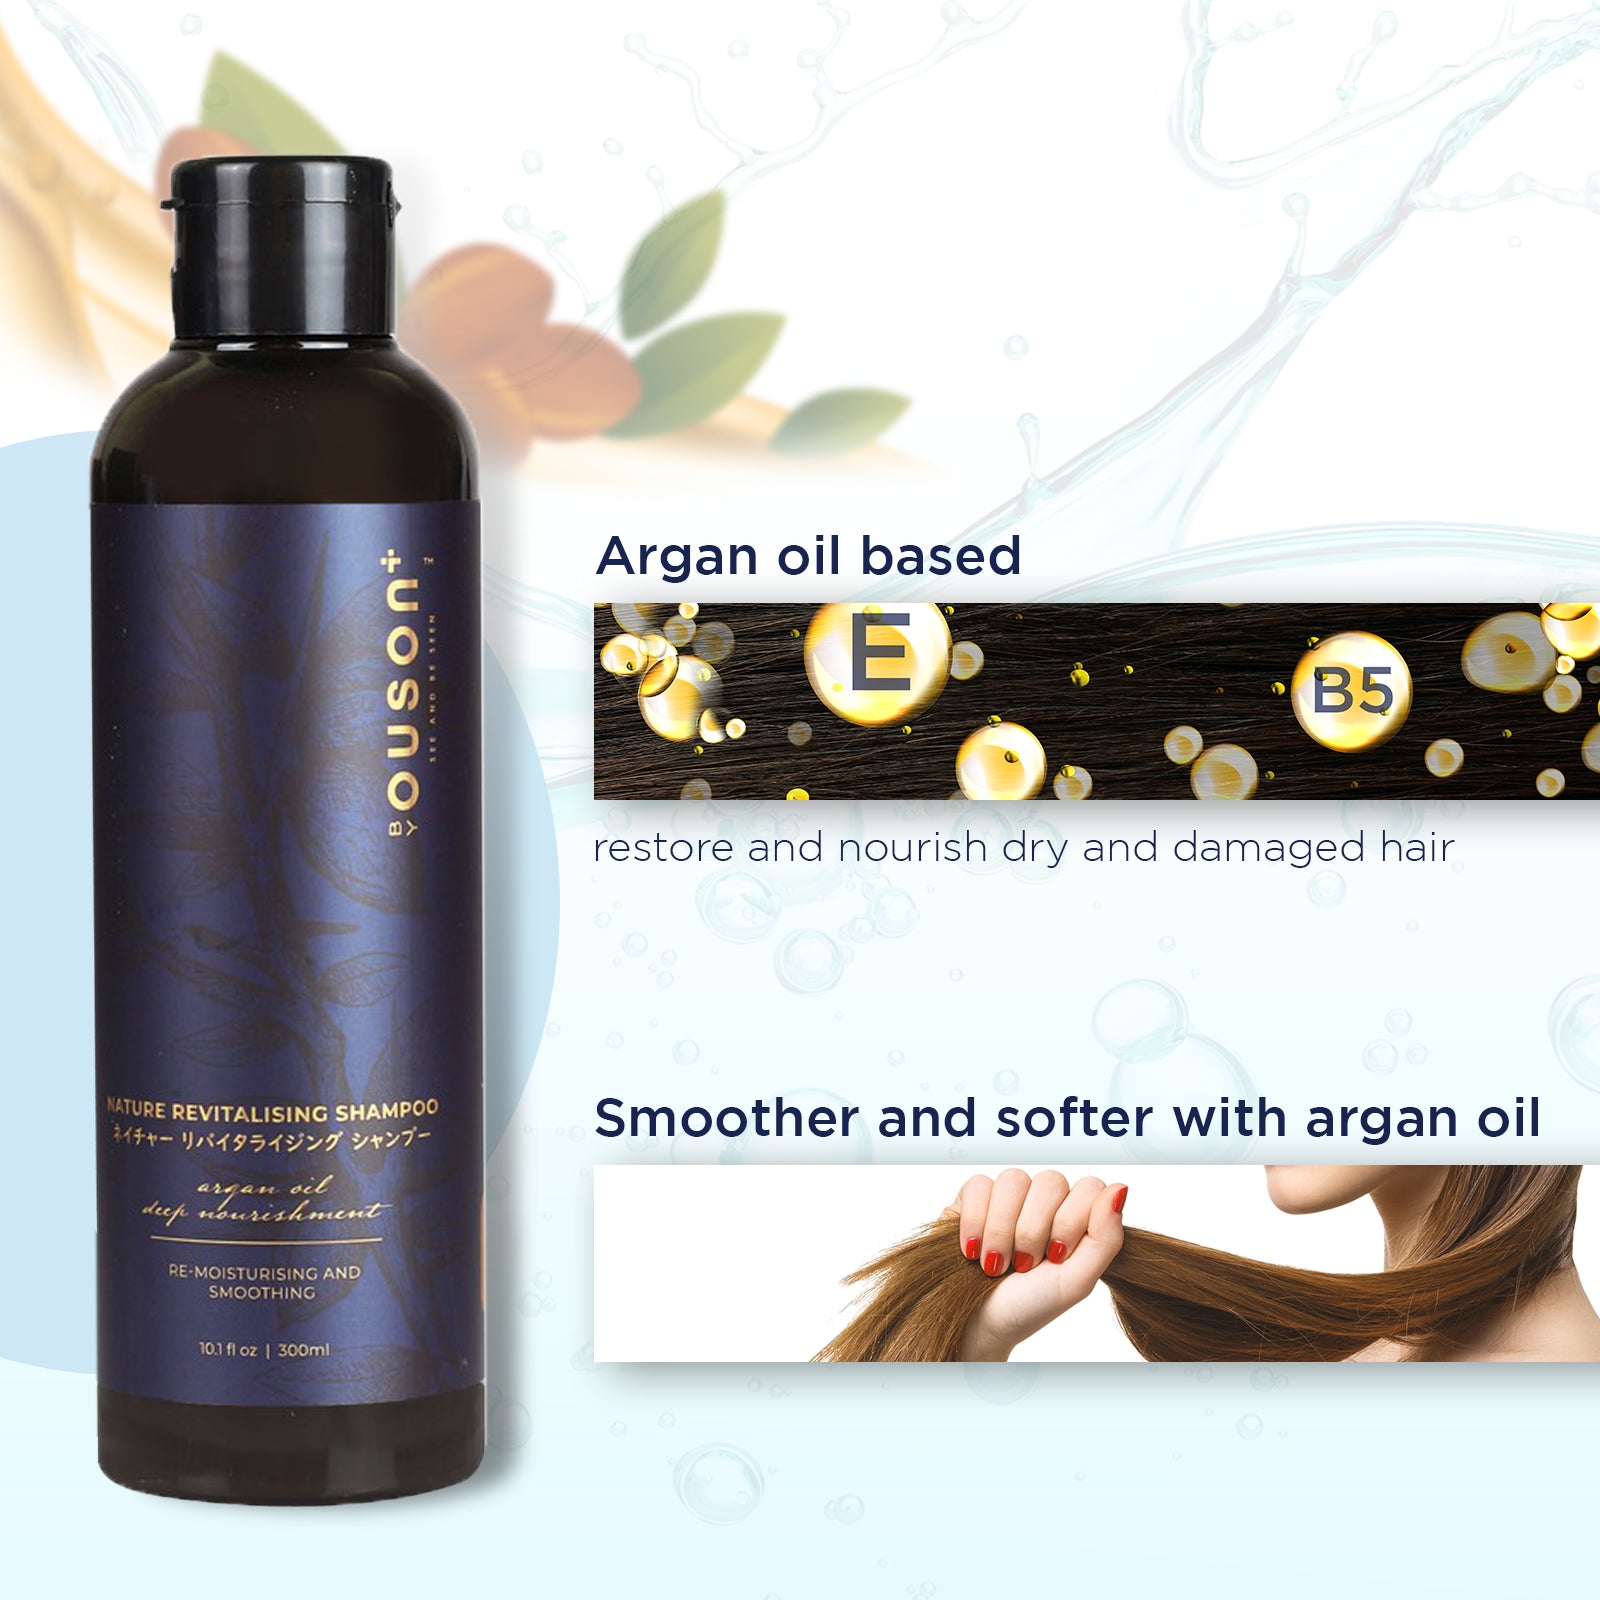 Ouson Argan Oil Series Premium Gift Set